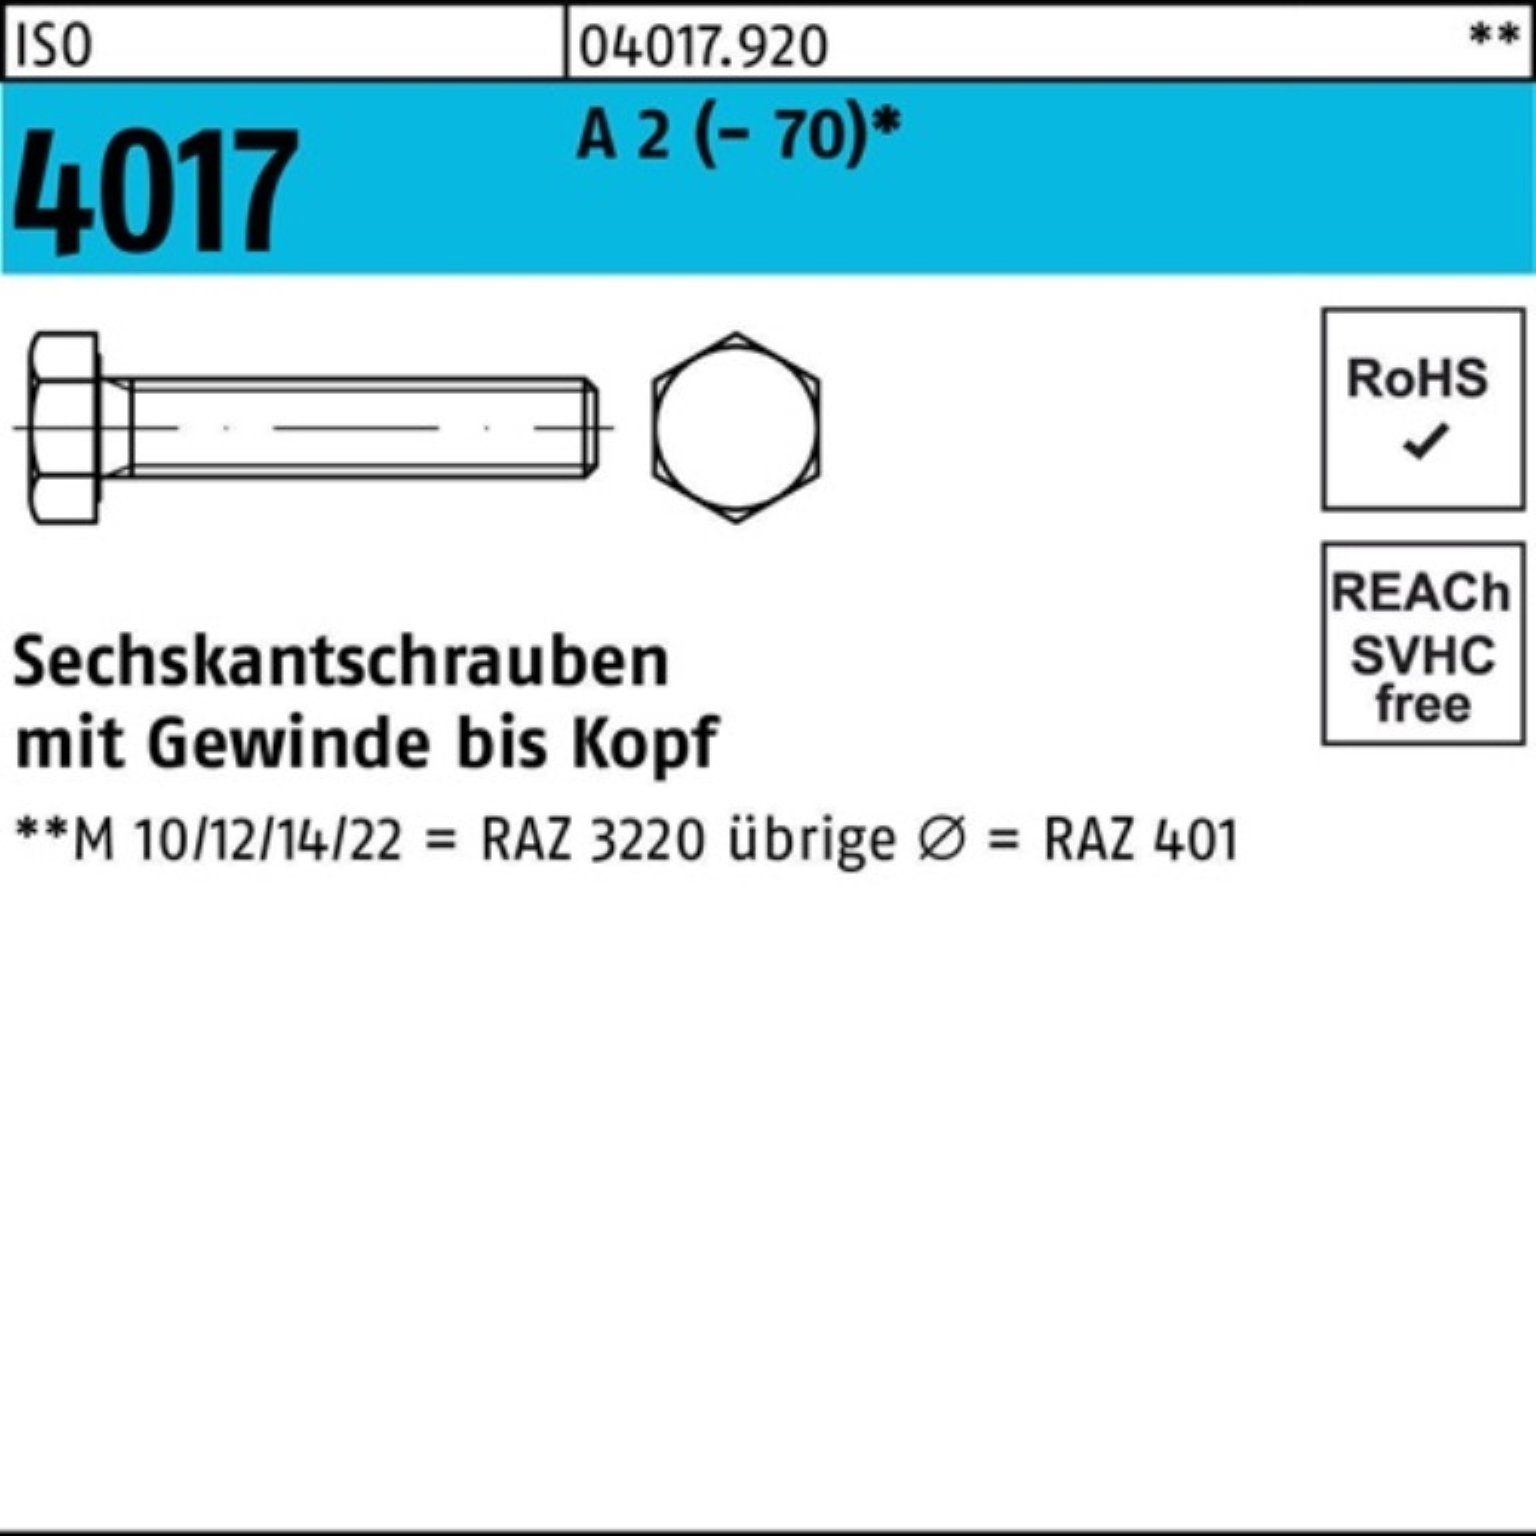 Bufab Sechskantschraube 100er Pack Sechskantschraube ISO 4017 VG M3x 20 A 2 (70) 100 Stück | Schrauben